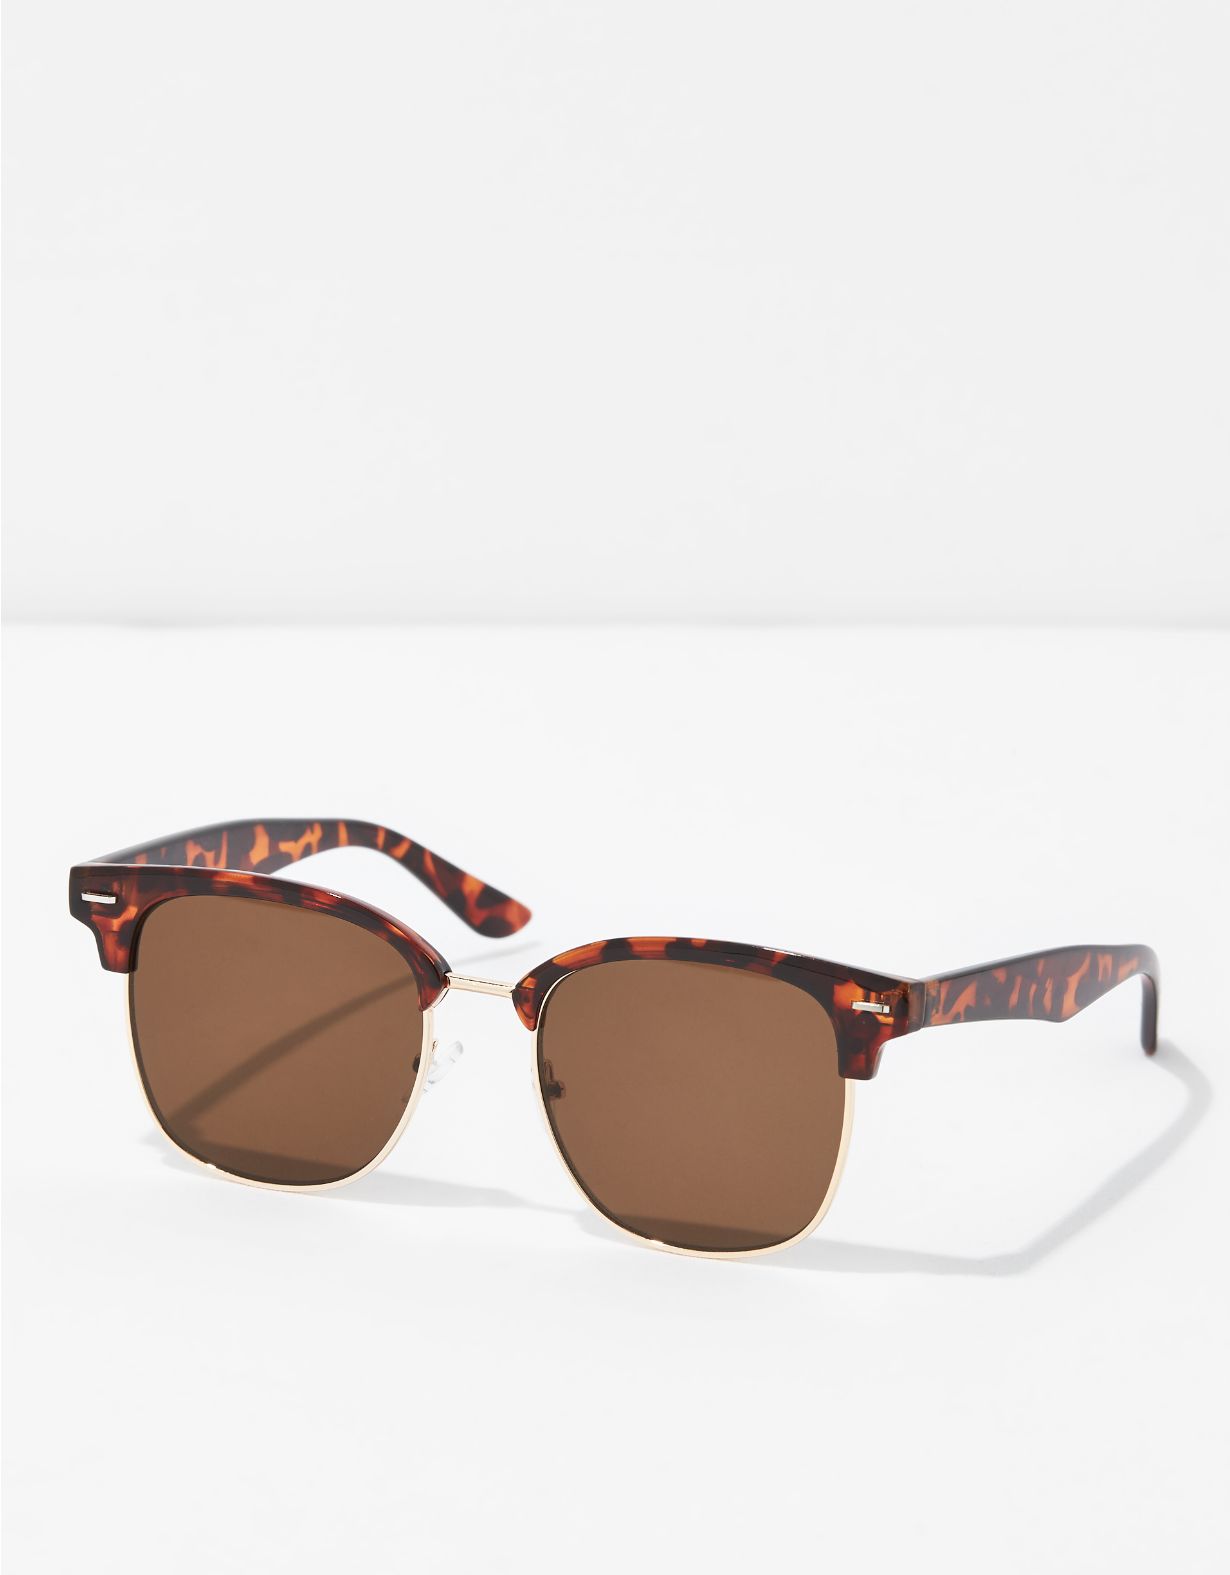 AEO Tortoise Sunglasses